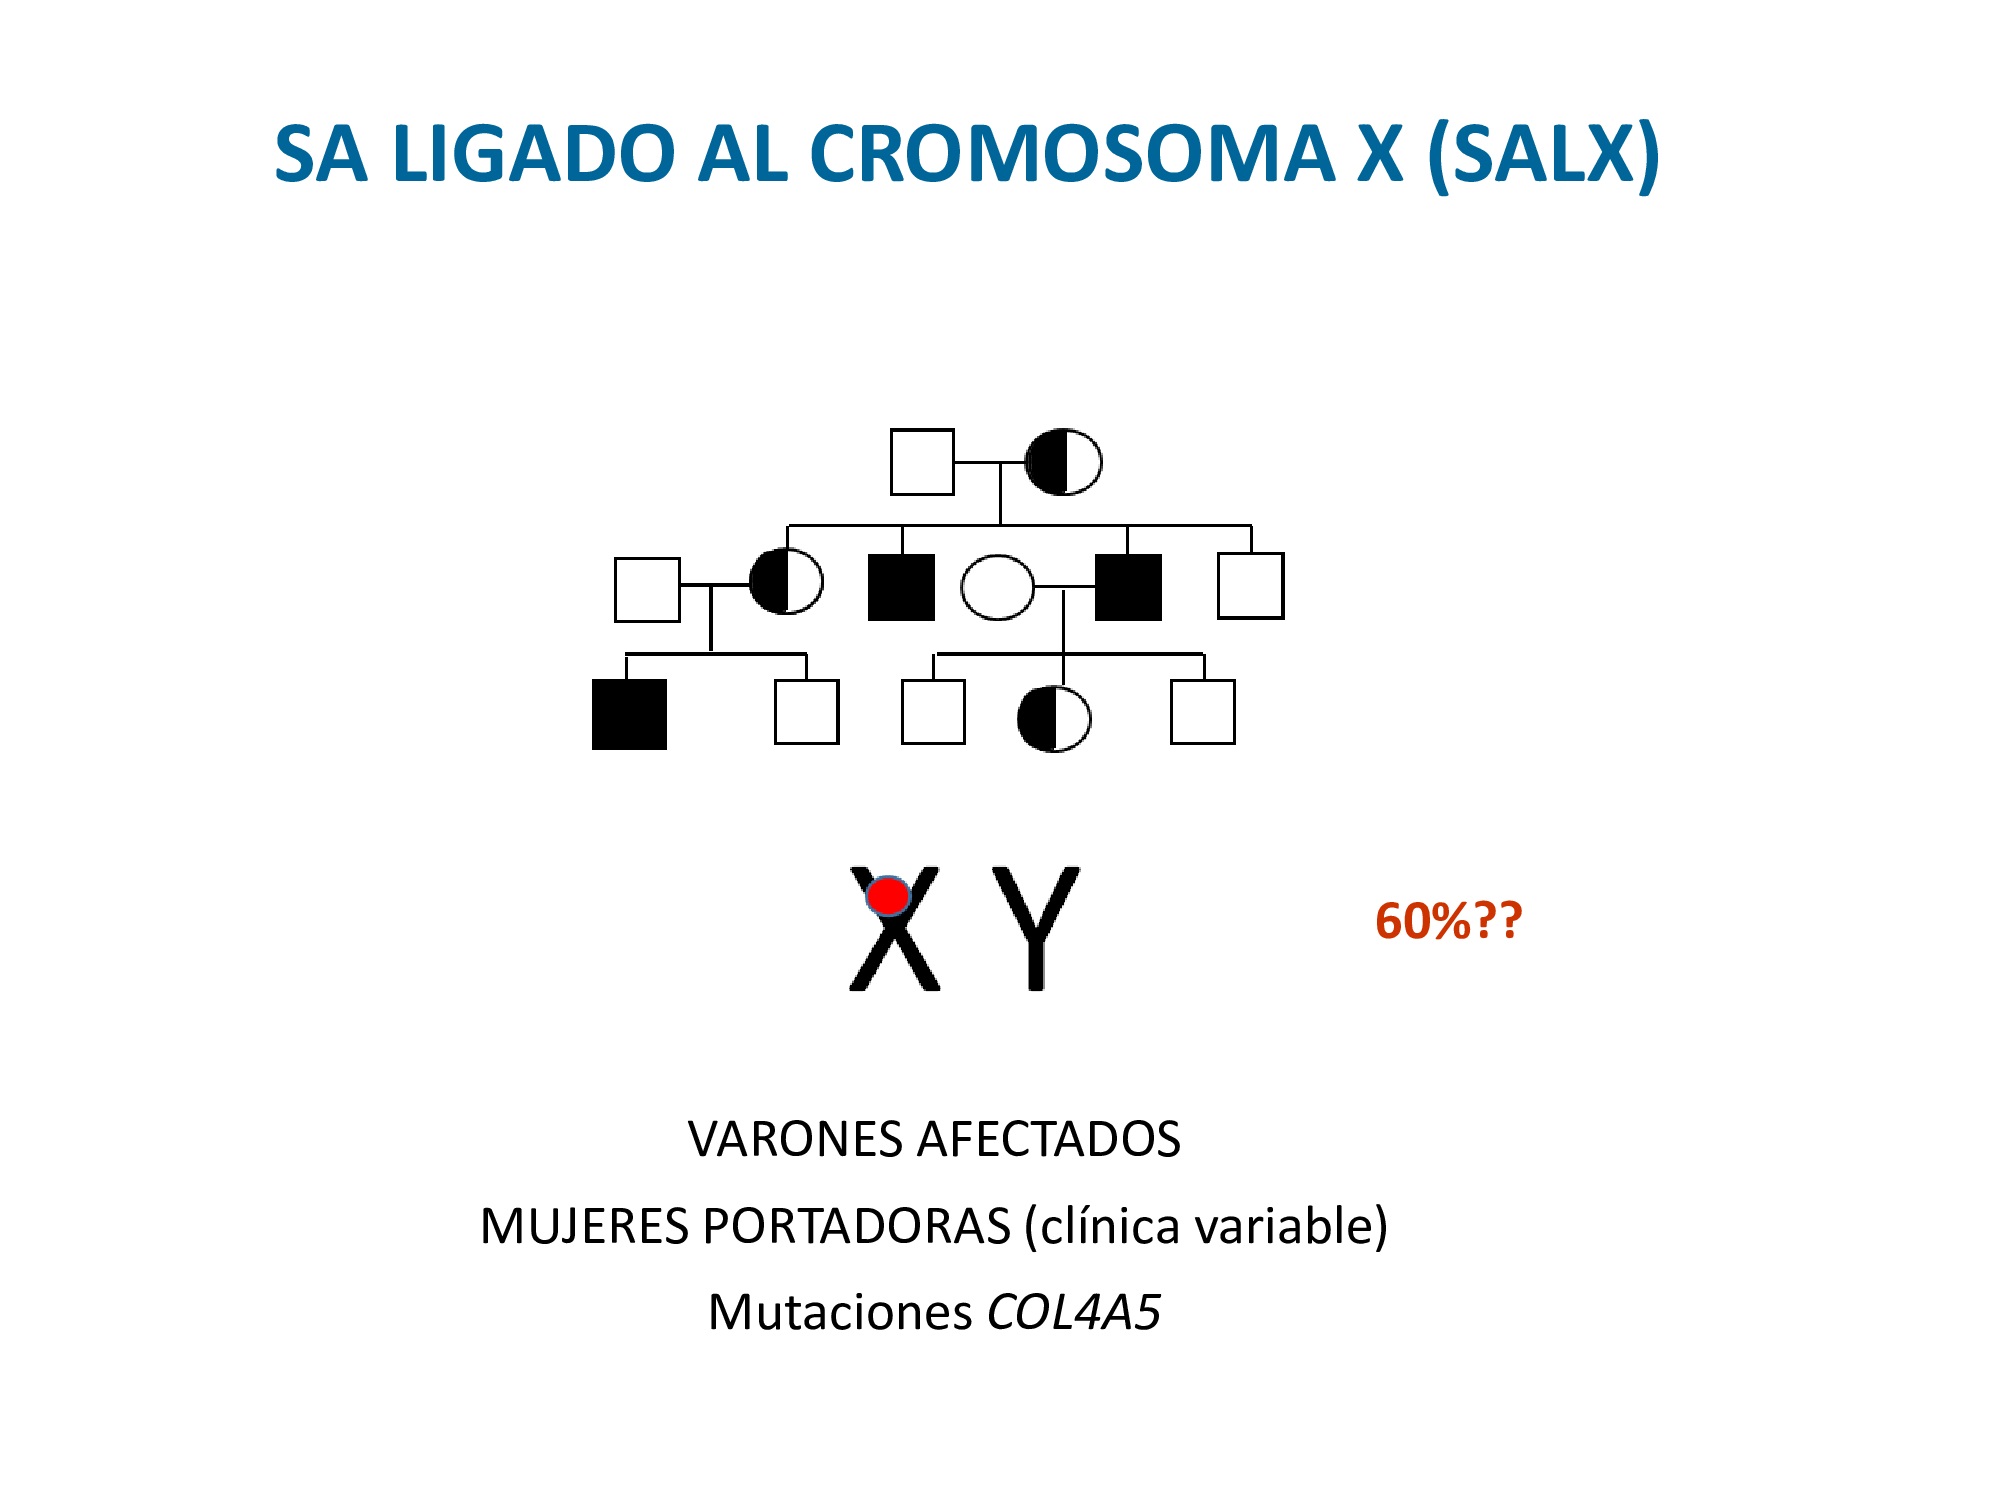 Si pasamos al SALX, es el responsable del 60% de los casos del síndrome (probablemente menos xq la forma dominante está infradignosticada) y como cualquier enfermedad ligada al CR X, se caracteriza porque los varones están afectados y las mujeres portadoras podrían ser asintomáticas o presentar una clínica más leve, pero en este caso se ha descrito que existe una gran variabilidad clínica en estas mujeres. 
Este tipo de SA está causado por mutaciones en el gen COL4A5 de la familia del colágeno tipo IV. 